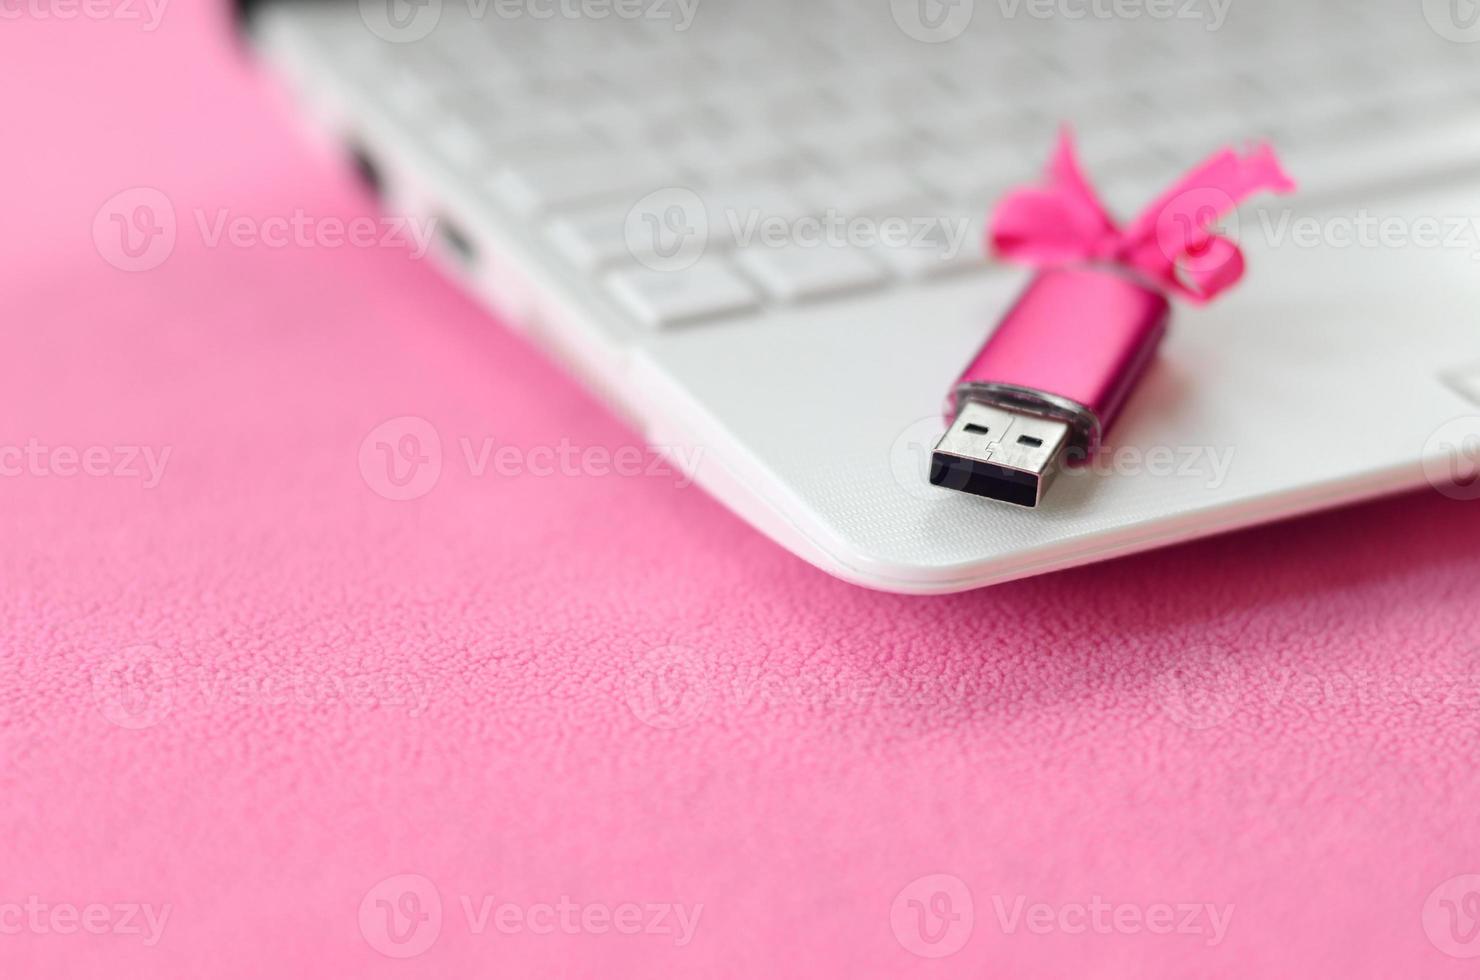 cartão de memória flash usb rosa brilhante com um laço rosa encontra-se em um cobertor de tecido de lã rosa claro macio e peludo ao lado de um laptop branco. design de presente feminino clássico para um cartão de memória foto